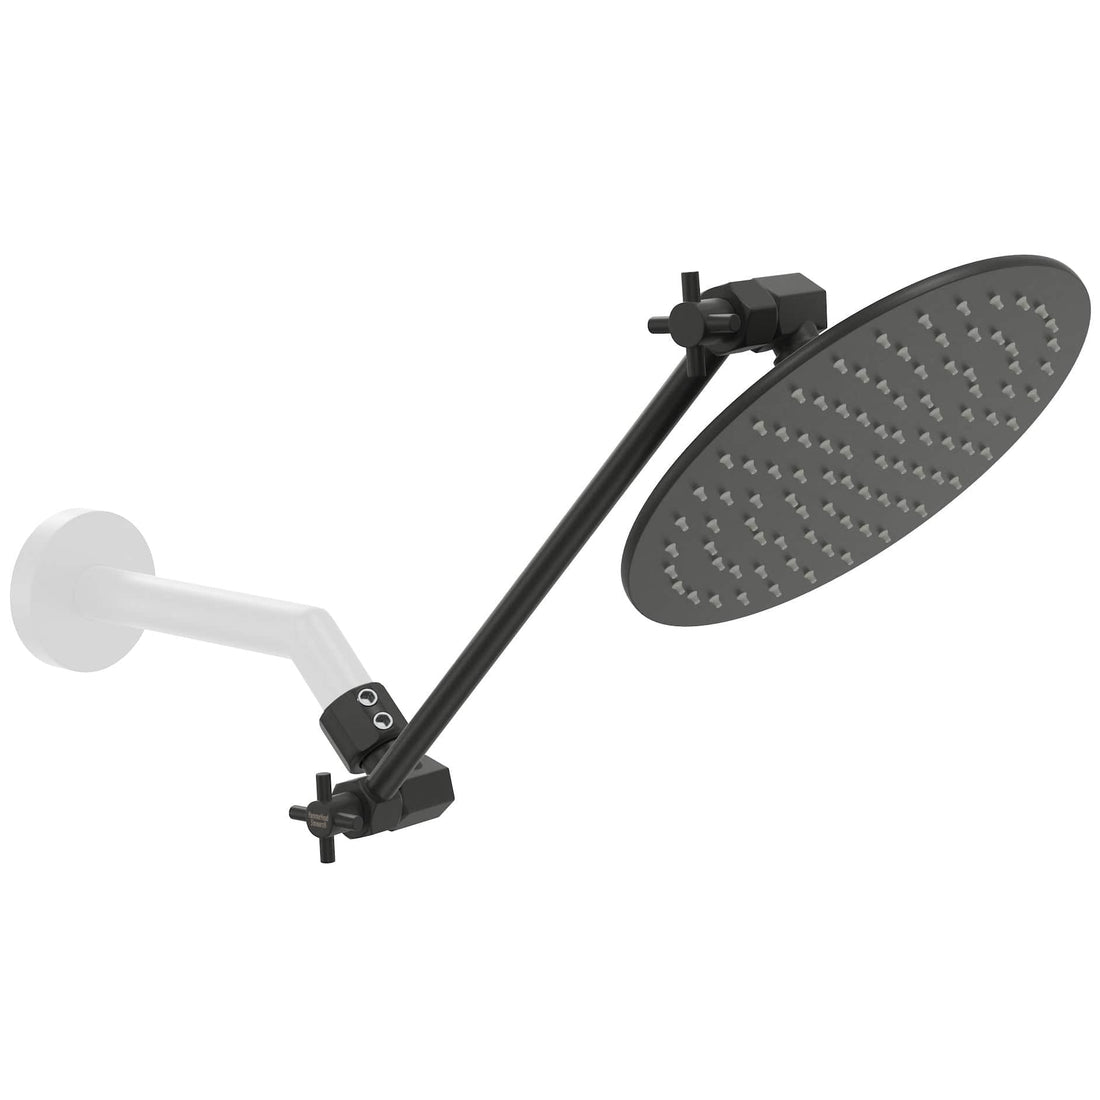 (Main Image) Matte Black / 12 Inch Adjustable Shower Arm with 8 Inch Rain Shower Head - The Shower Head Store